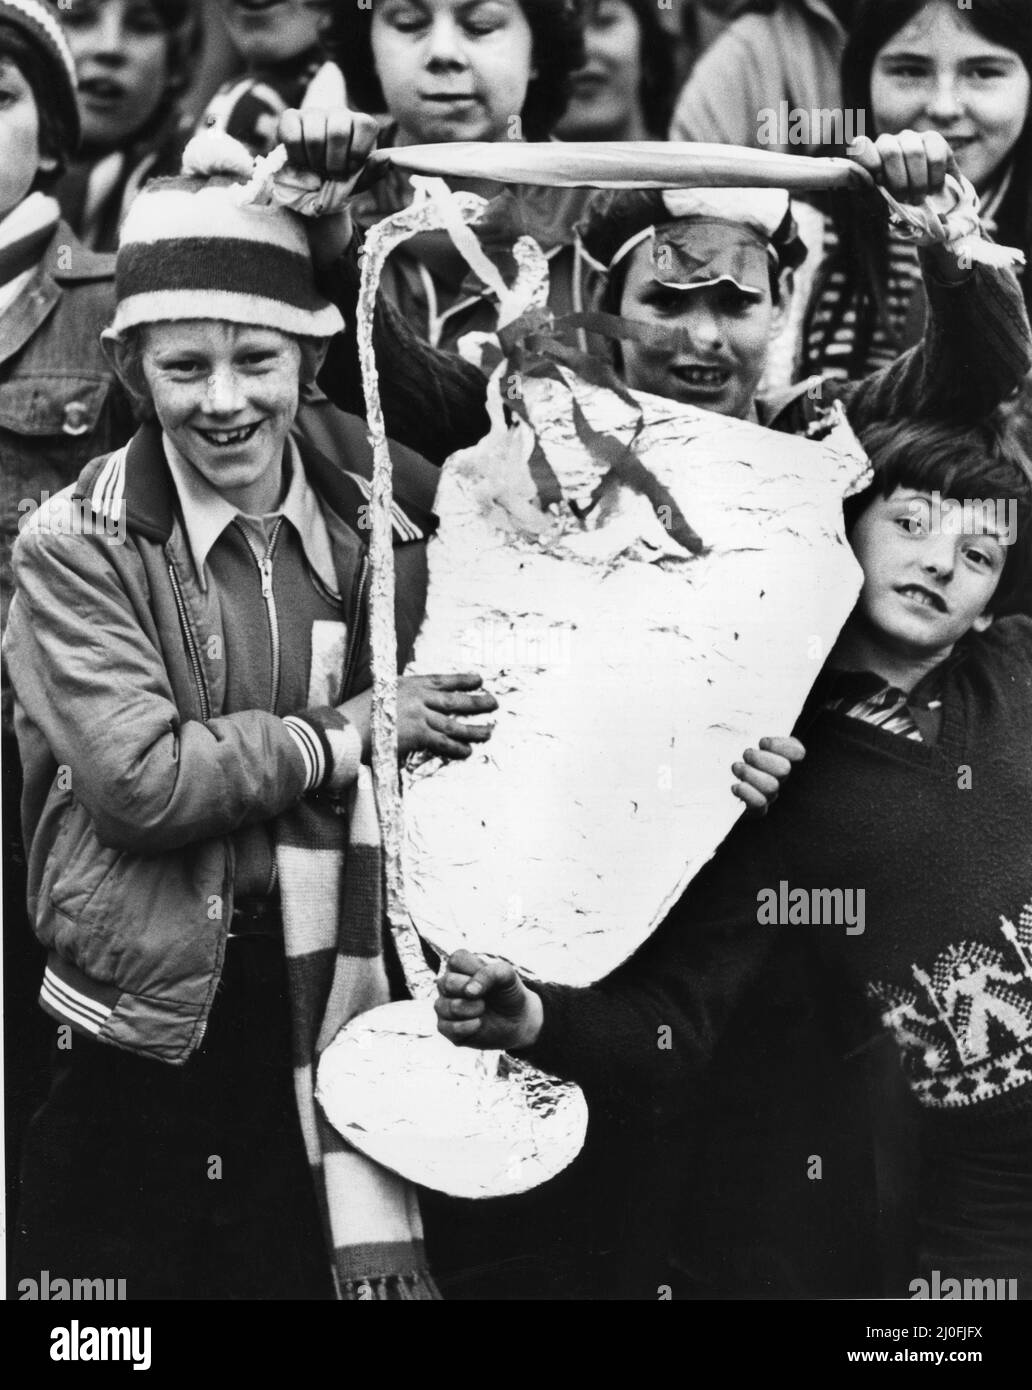 Begeisterte Liverpool-Fans versammelten sich im Stadtzentrum, um ihr Team nach ihrem Sieg im Europacup-Finale aus Wembley willkommen zu heißen. Hier wartet ein junger Fan mit einer Duplikatversion der berühmten europäischen Trophäe auf das Team, das die echte aus einem offenen Bus zieht. 11. Mai 1978. Stockfoto